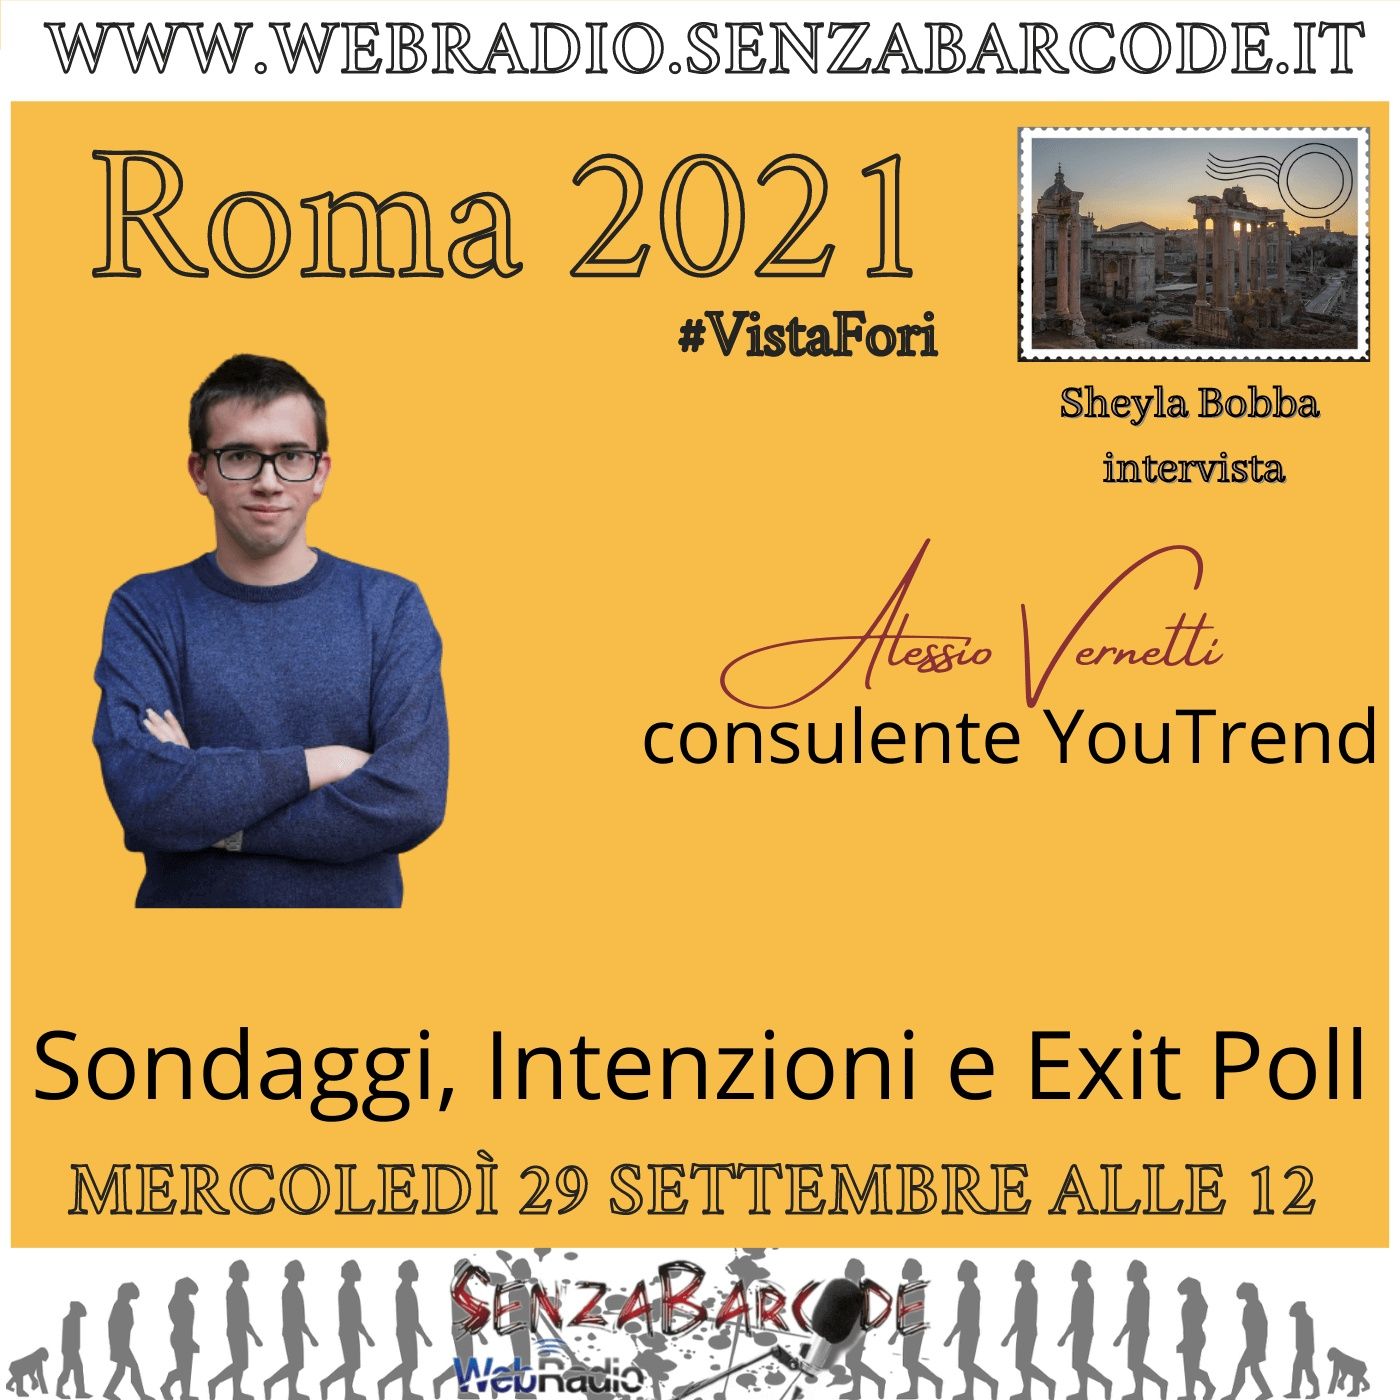 Sondaggi, intenzioni, Exit Poll. Con Alessio Vernetti, YouTrend